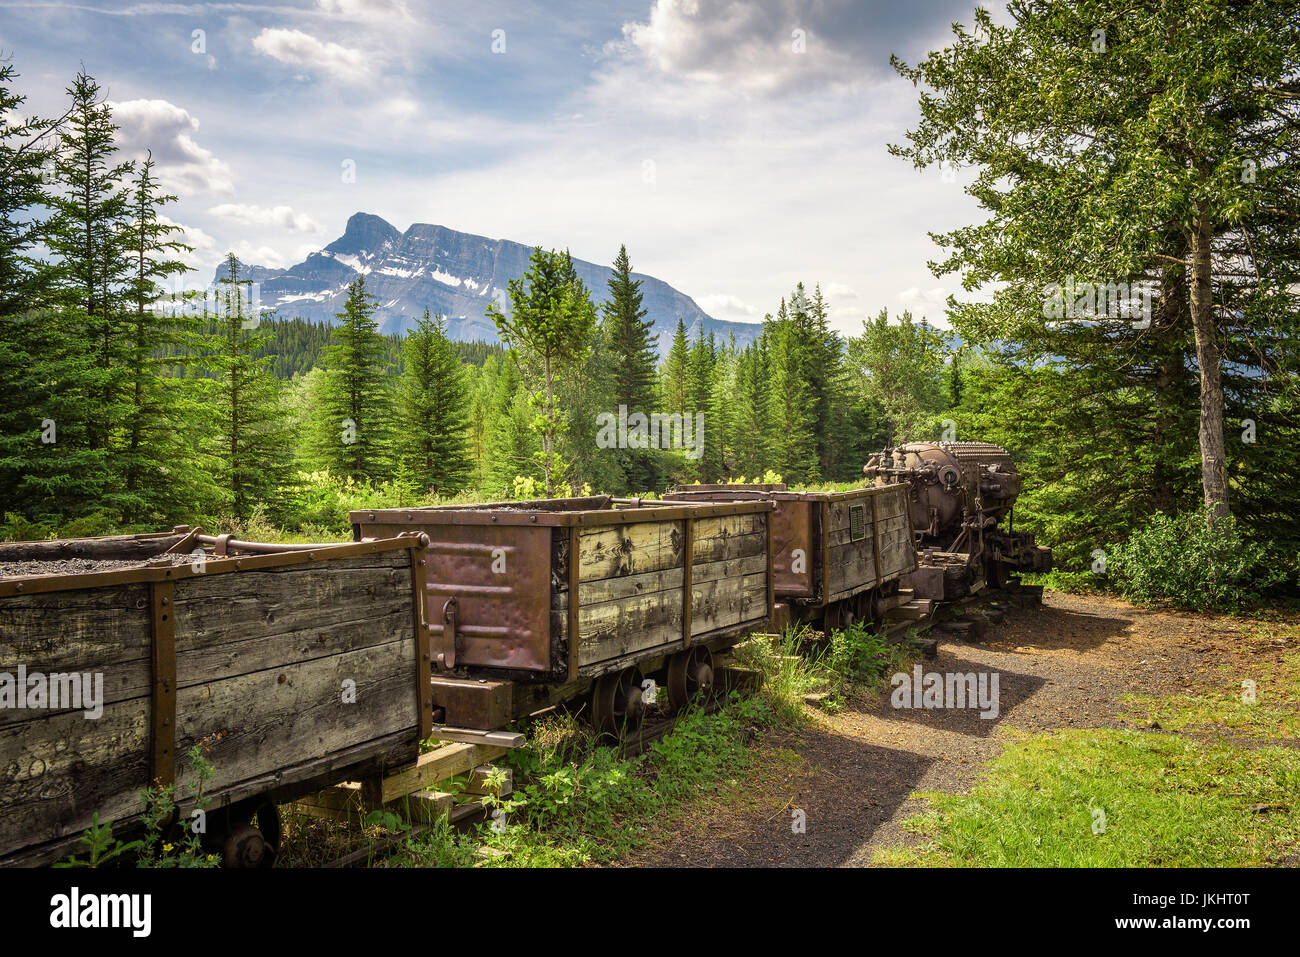 Storica miniera di carbone treno nella città fantasma di Bankhead con Mt. Rundle in background si trova nel Parco Nazionale di Banff, Alberta, Canada Foto Stock